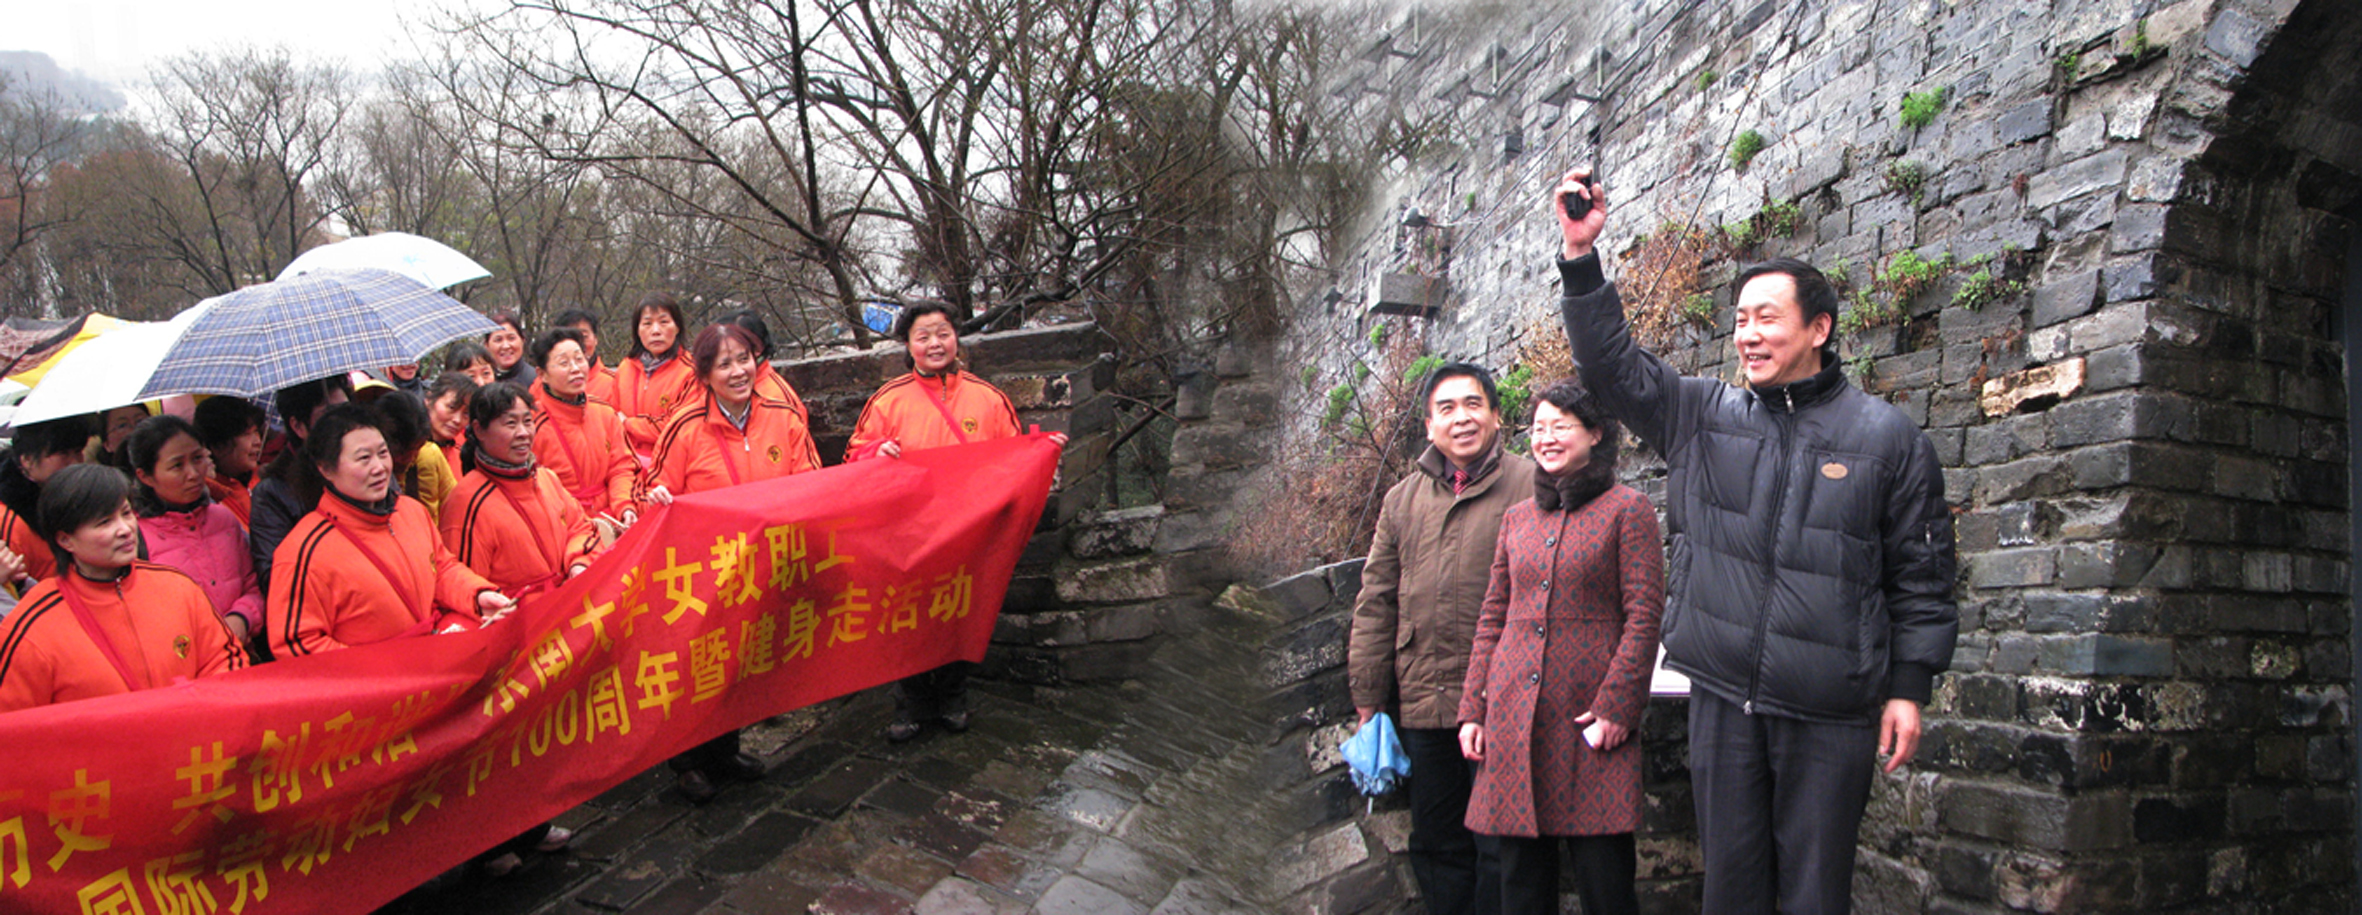 东南大学女教职工庆祝“三八”国际劳动妇女节100周年暨健身走活动在台城举行